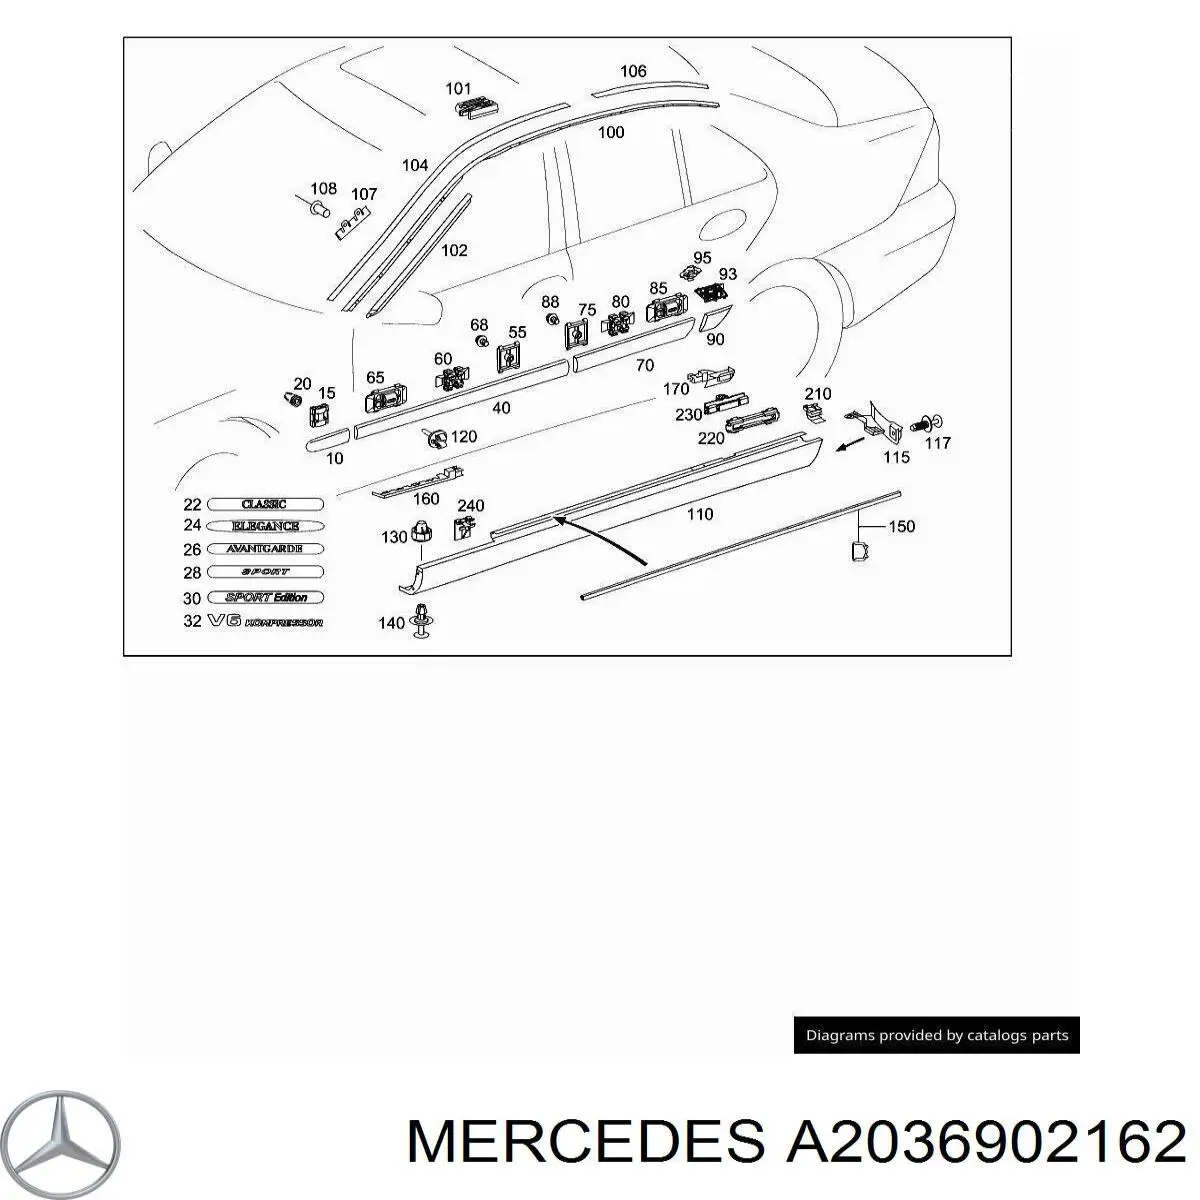 A2036902162 Mercedes moldura de la puerta delantera izquierda